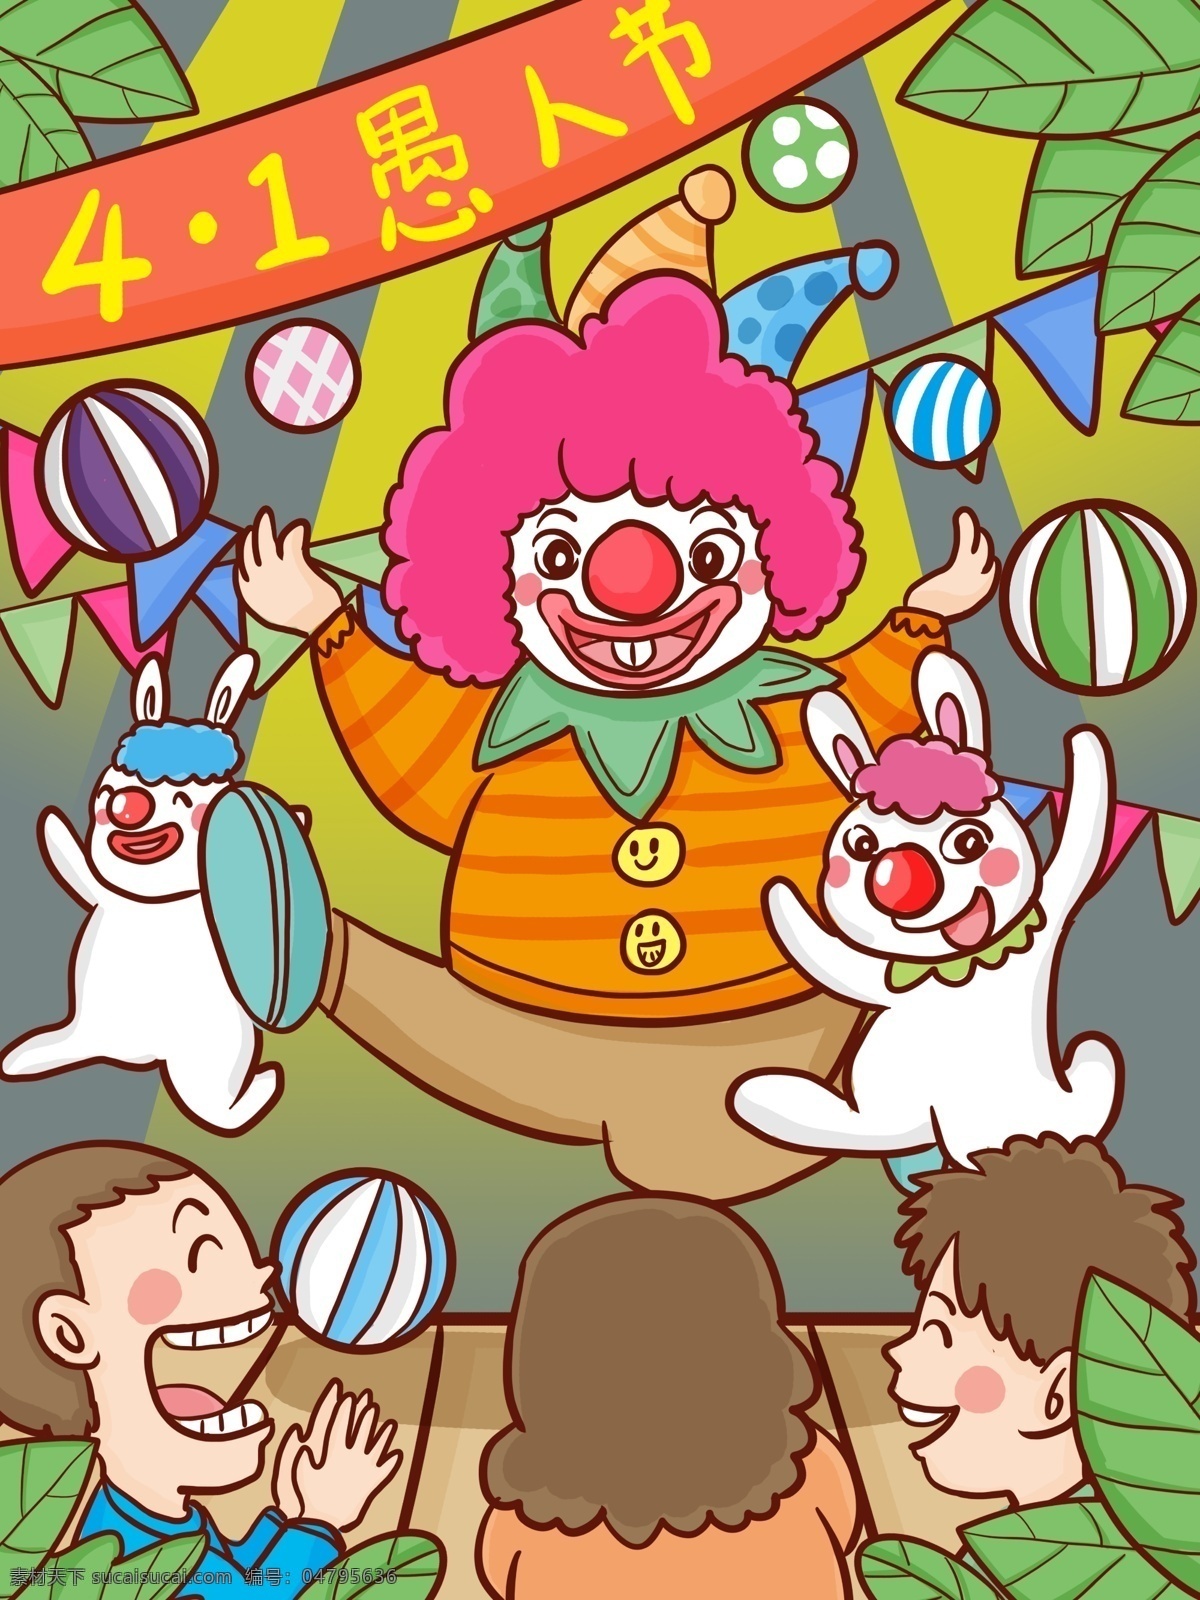 愚人节 小丑 朋友 舞台 上 逗乐 人们 笑 愚人 4月1日 四月一日 表演 小白兔 红鼻子 开心大笑 哈哈 开心 卡通